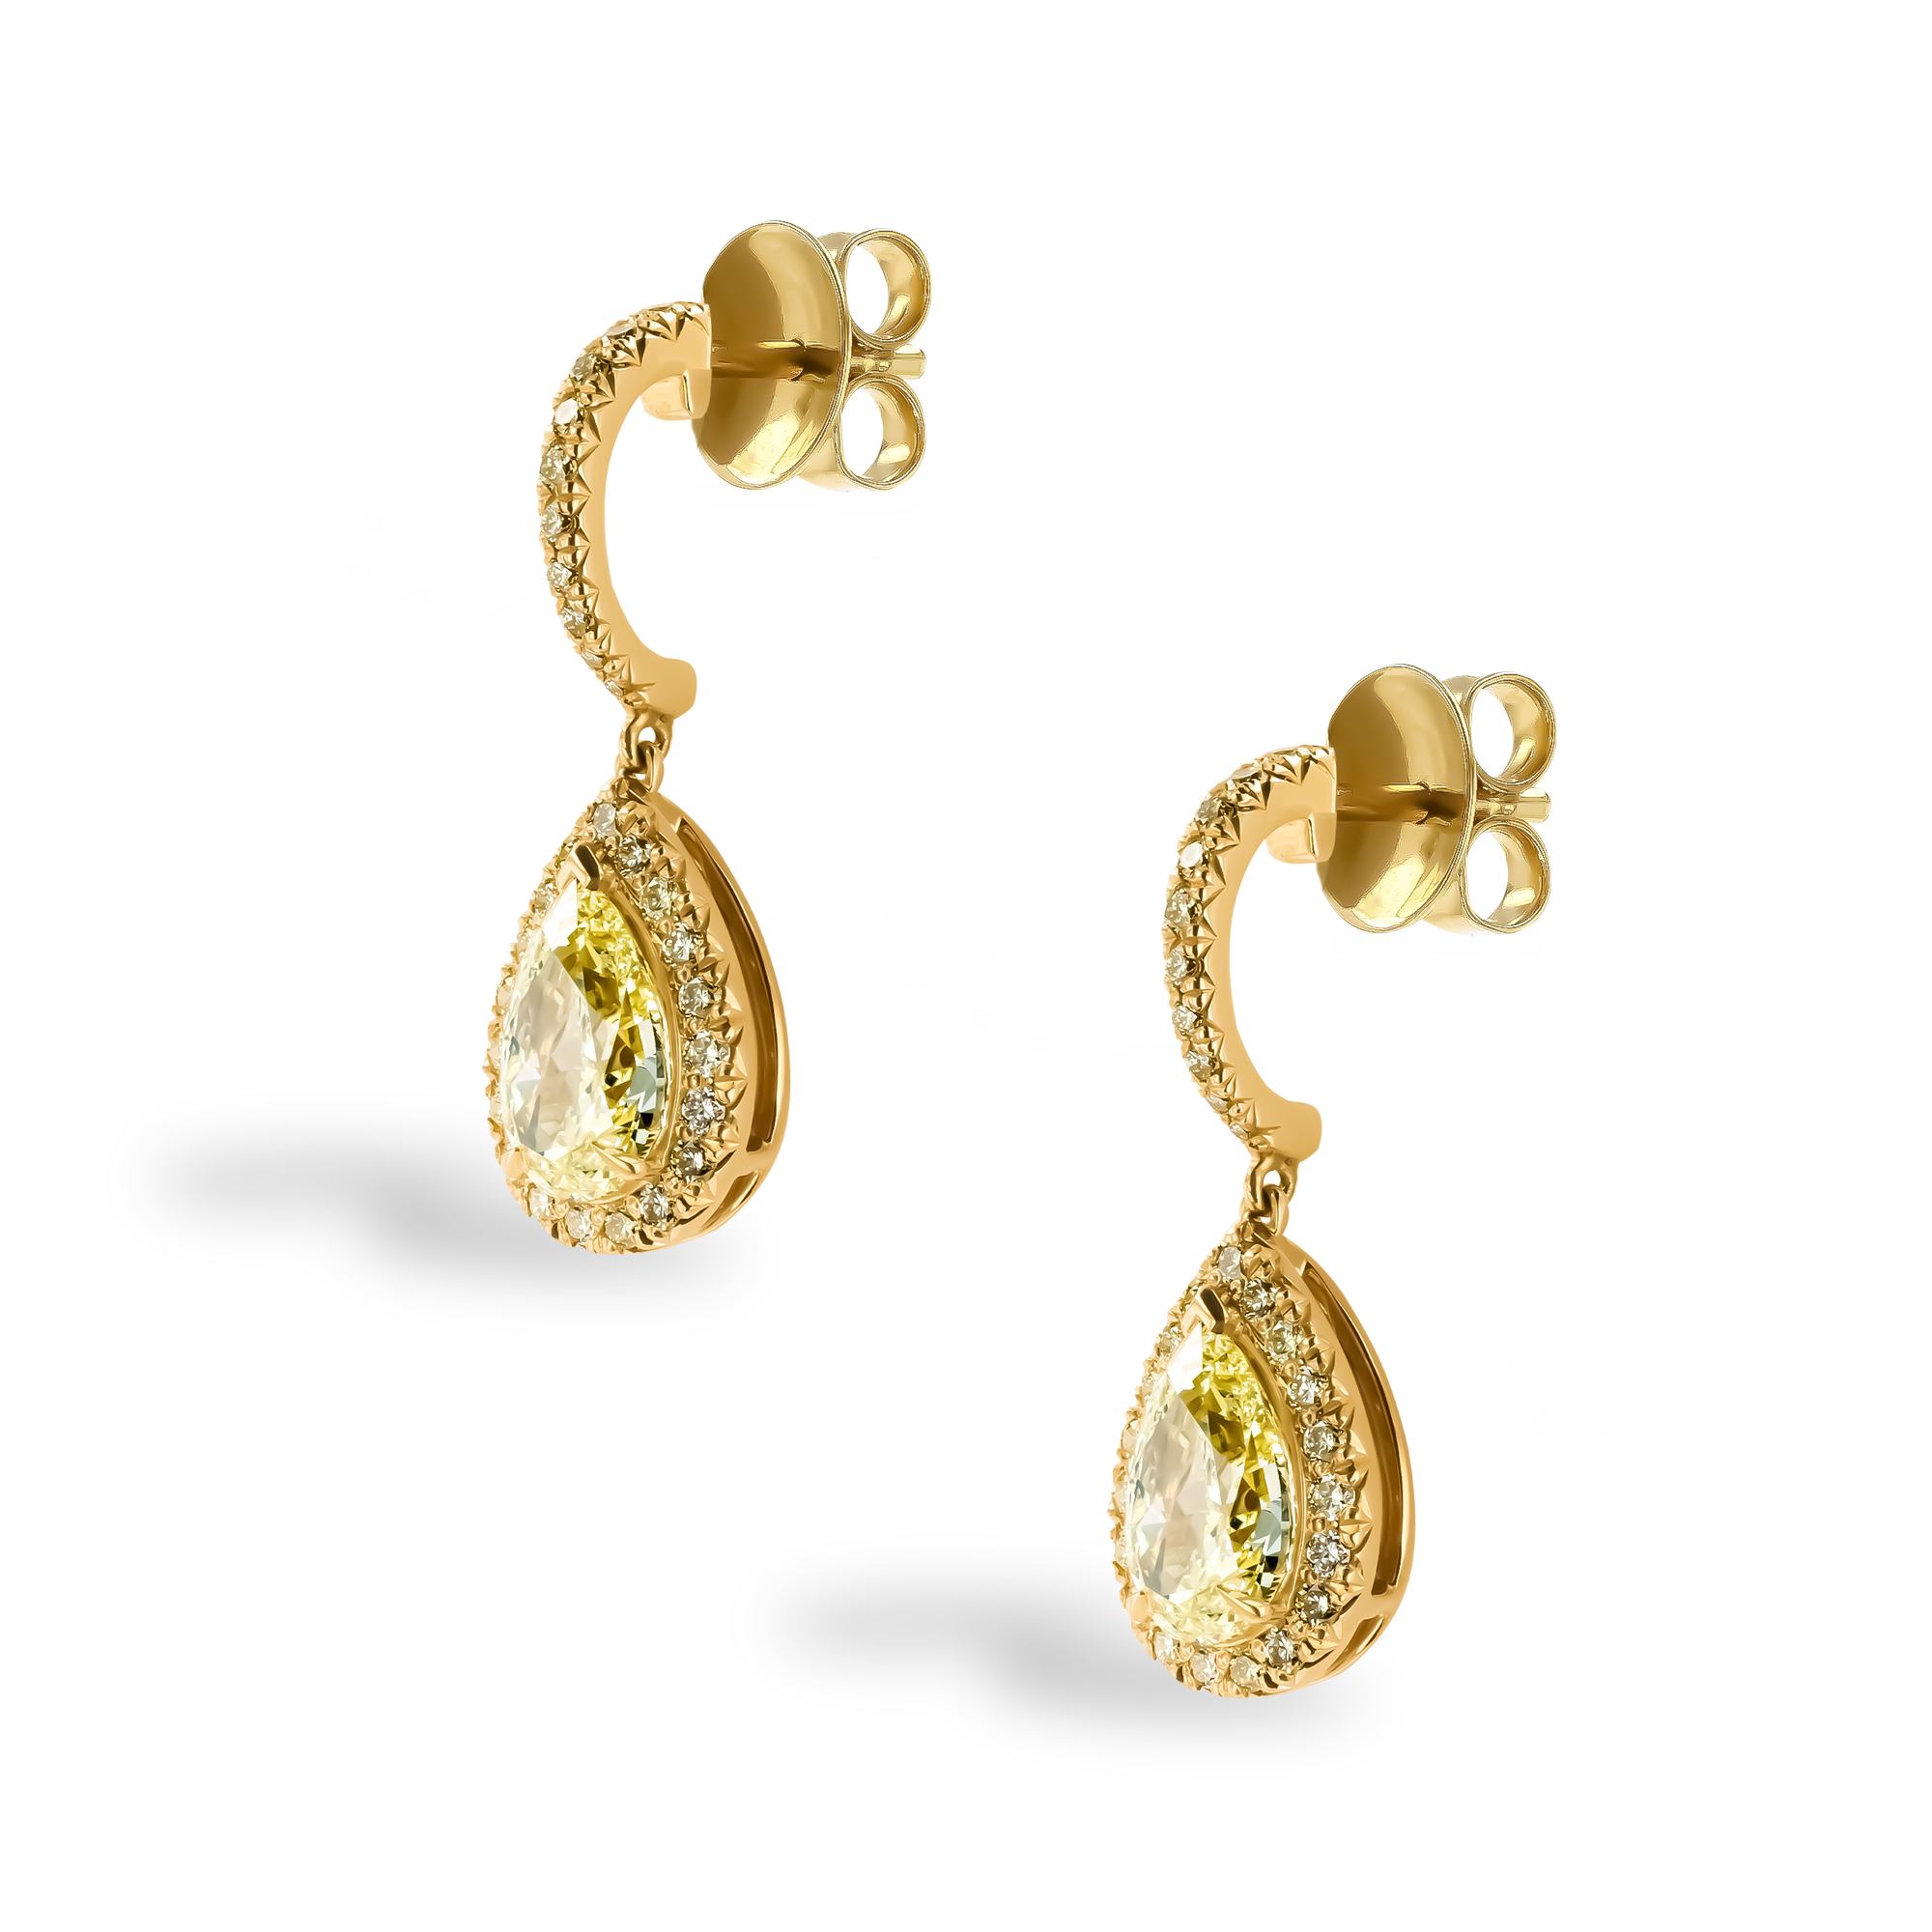 Celestial 2.11ct Fancy Yellow Diamond Drop Earrings Pear & Brilliant Cut, Claw Set_2